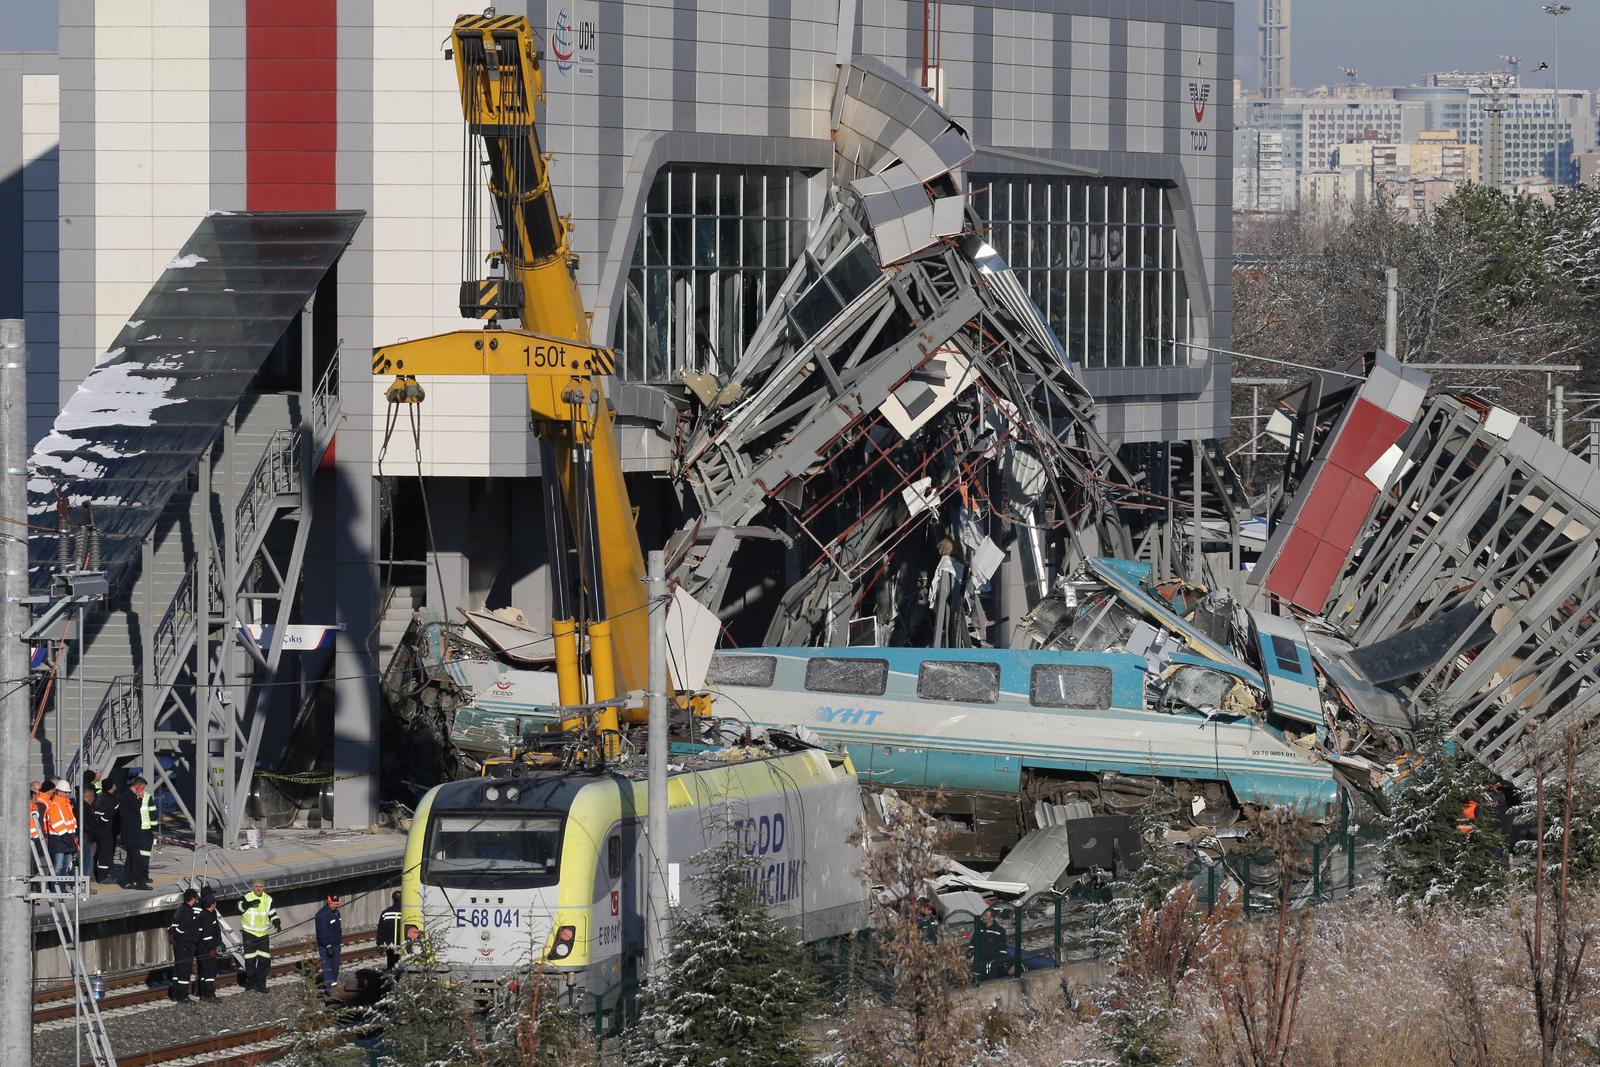 Tragedia. El accidente de un tren de alta velocidad con una locomotora de mantenimiento, dejó 9 muertos y 47 heridos. (EFE)